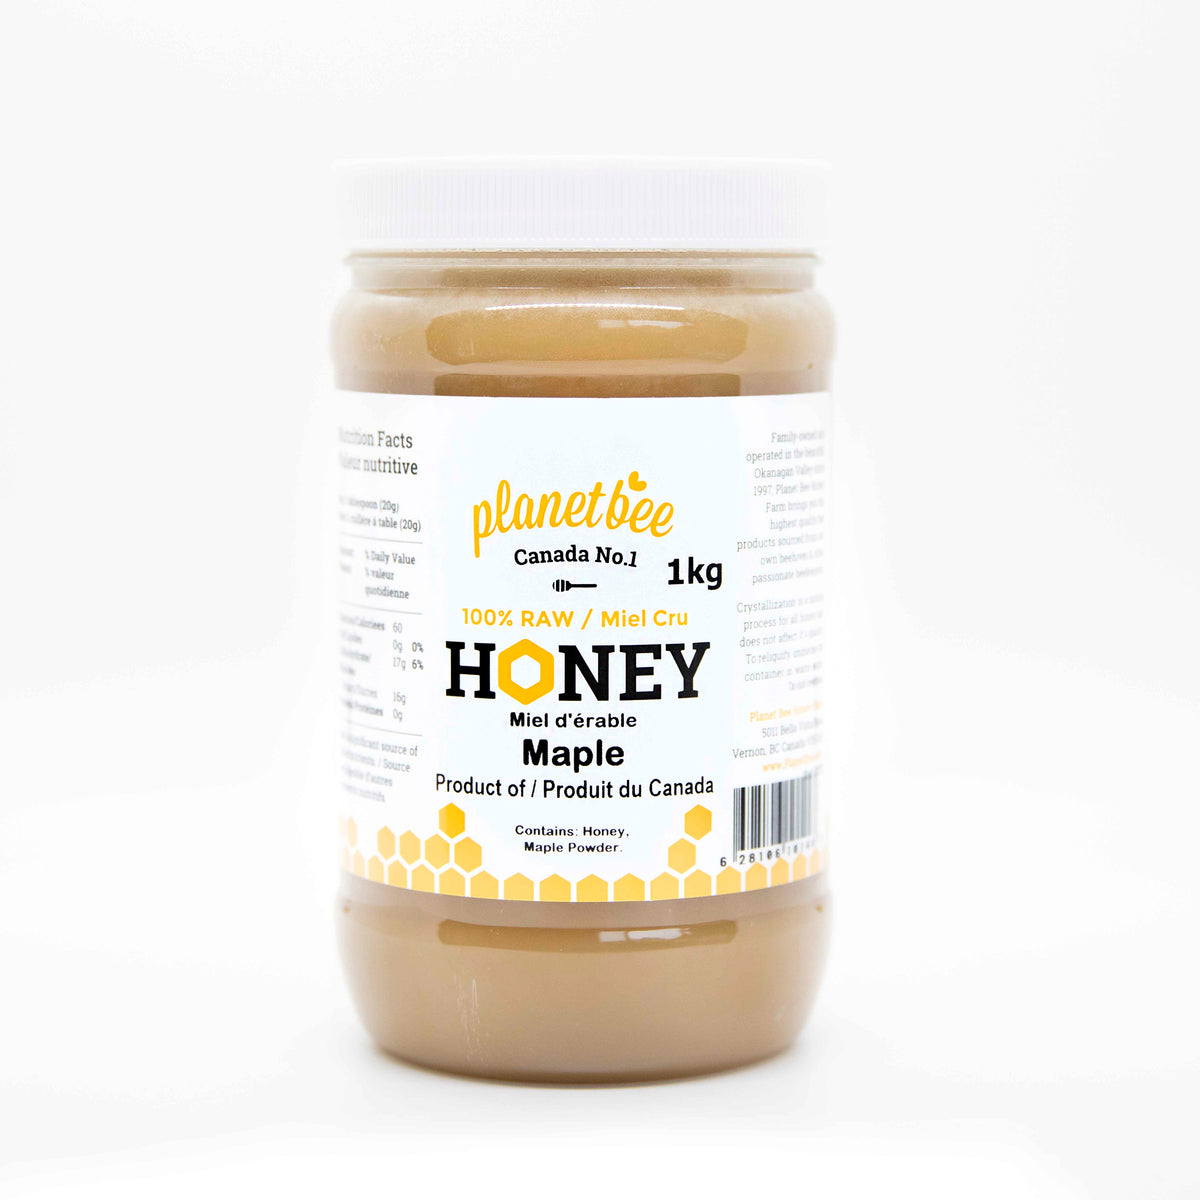 Maple Honey